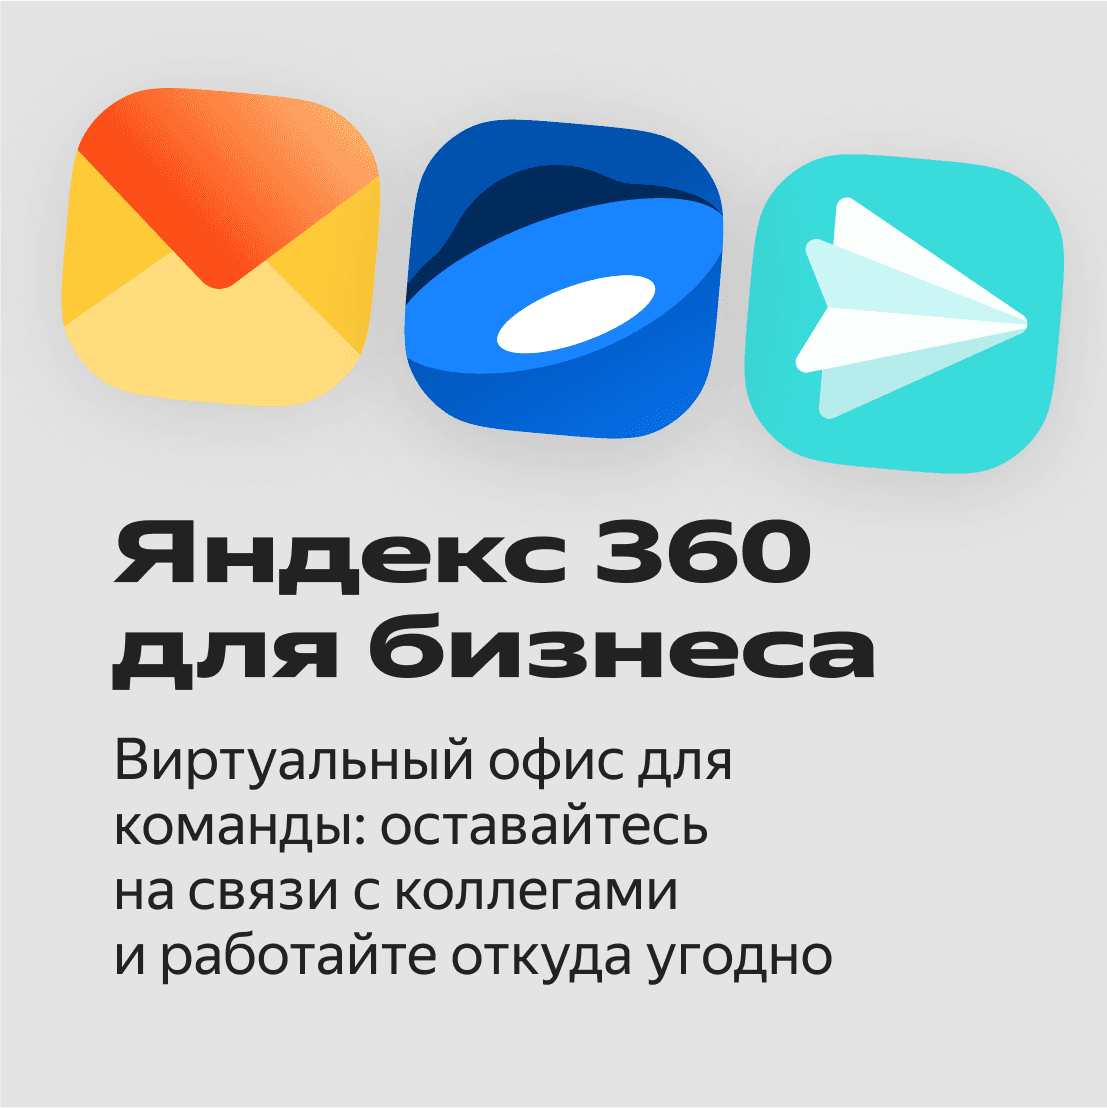 Яндекс 360 для бизнеса 2